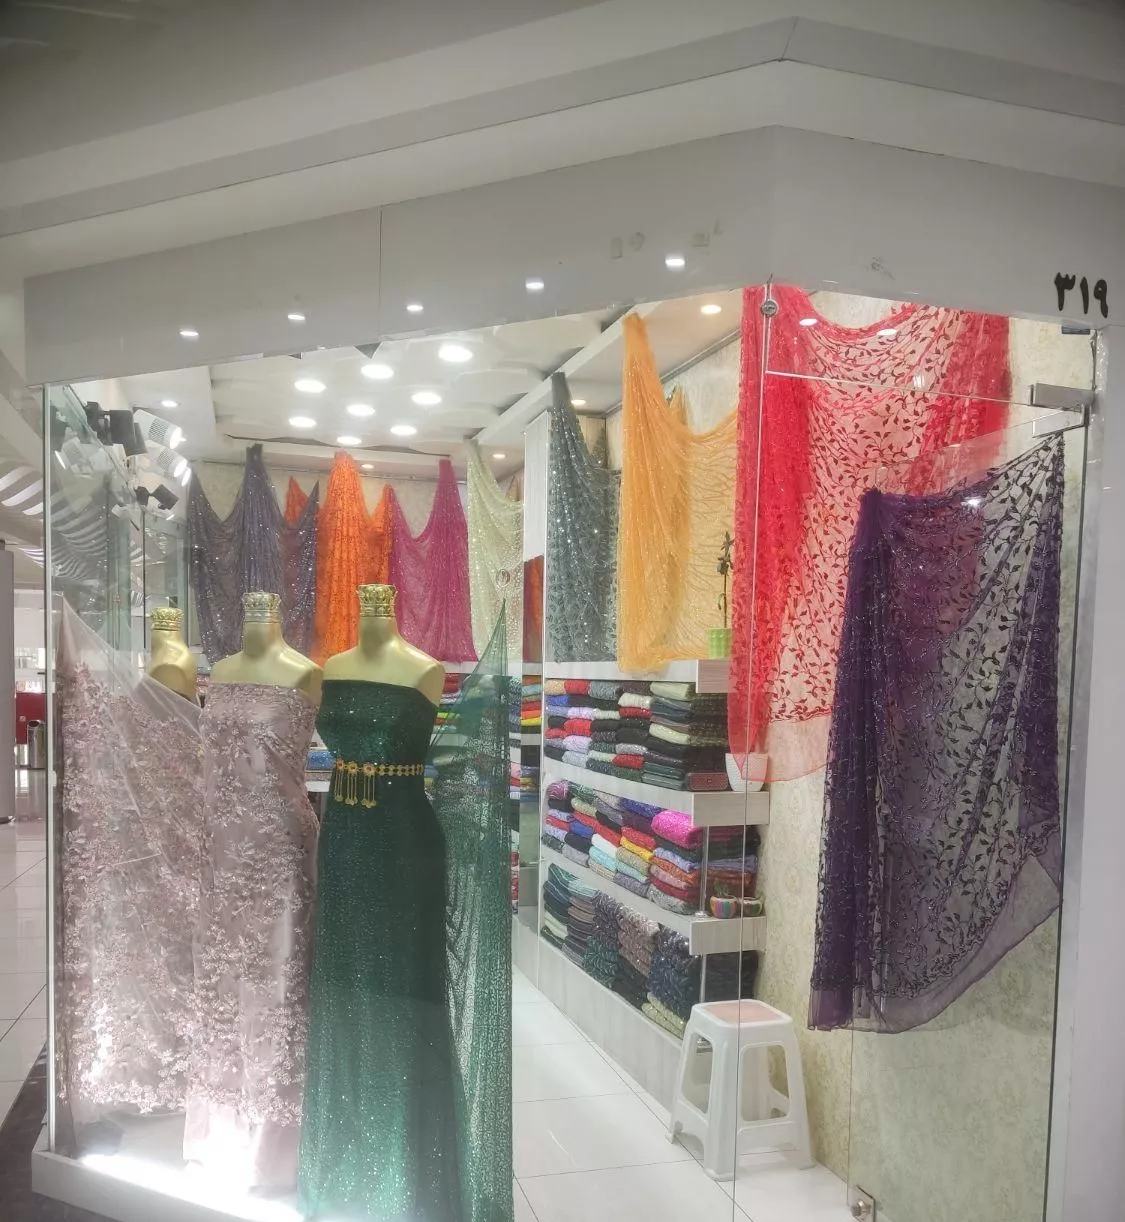 واگذاری کامل مغازه پارچه لباس زنانه